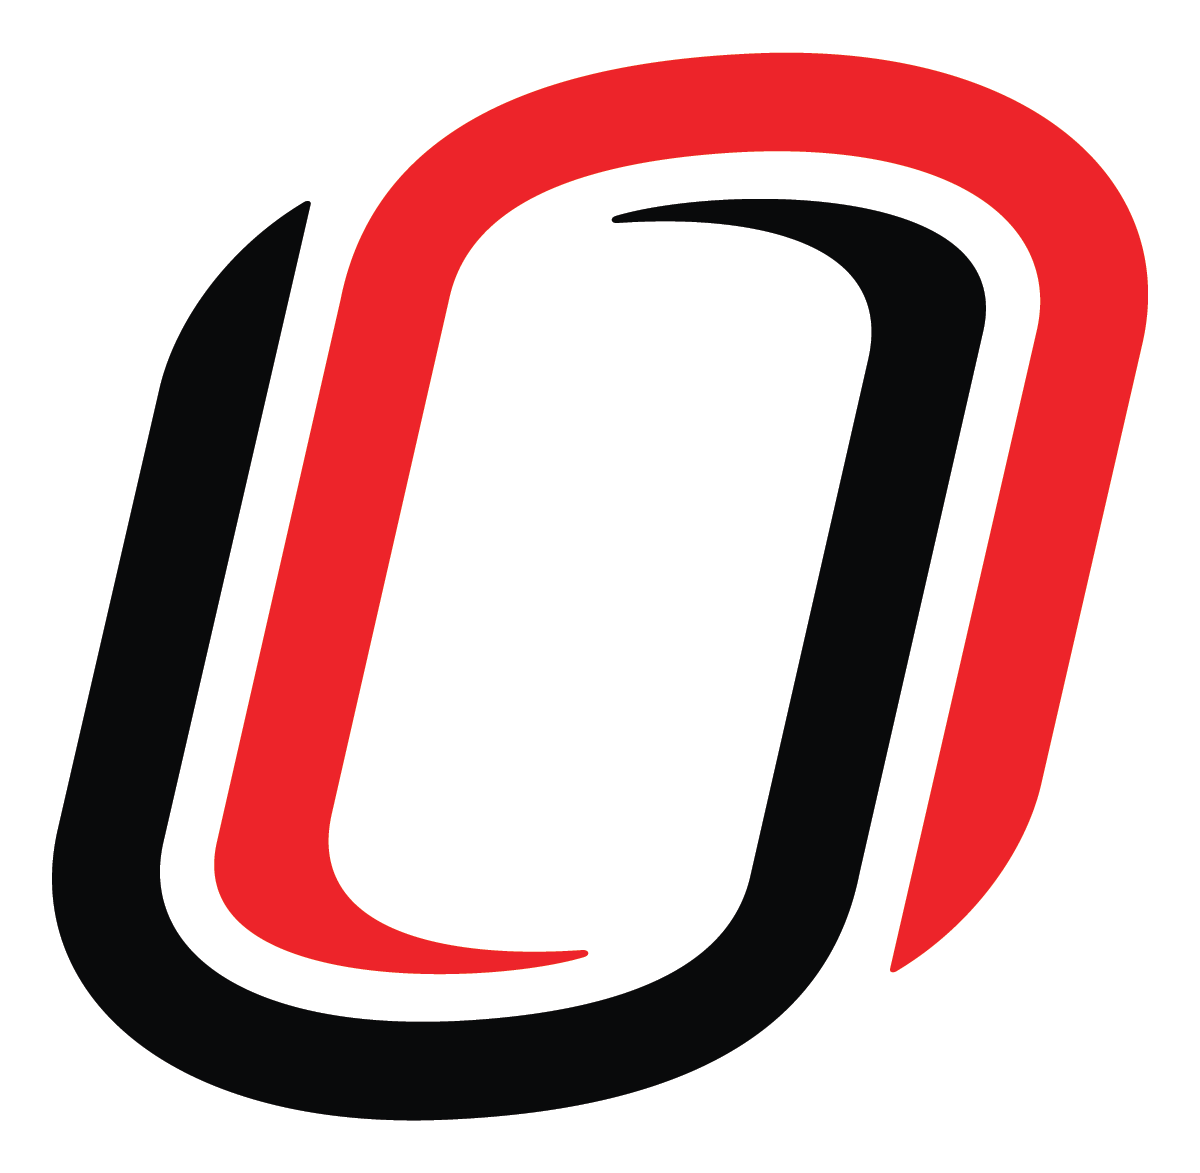 University of Nebraska - Omaha Logo